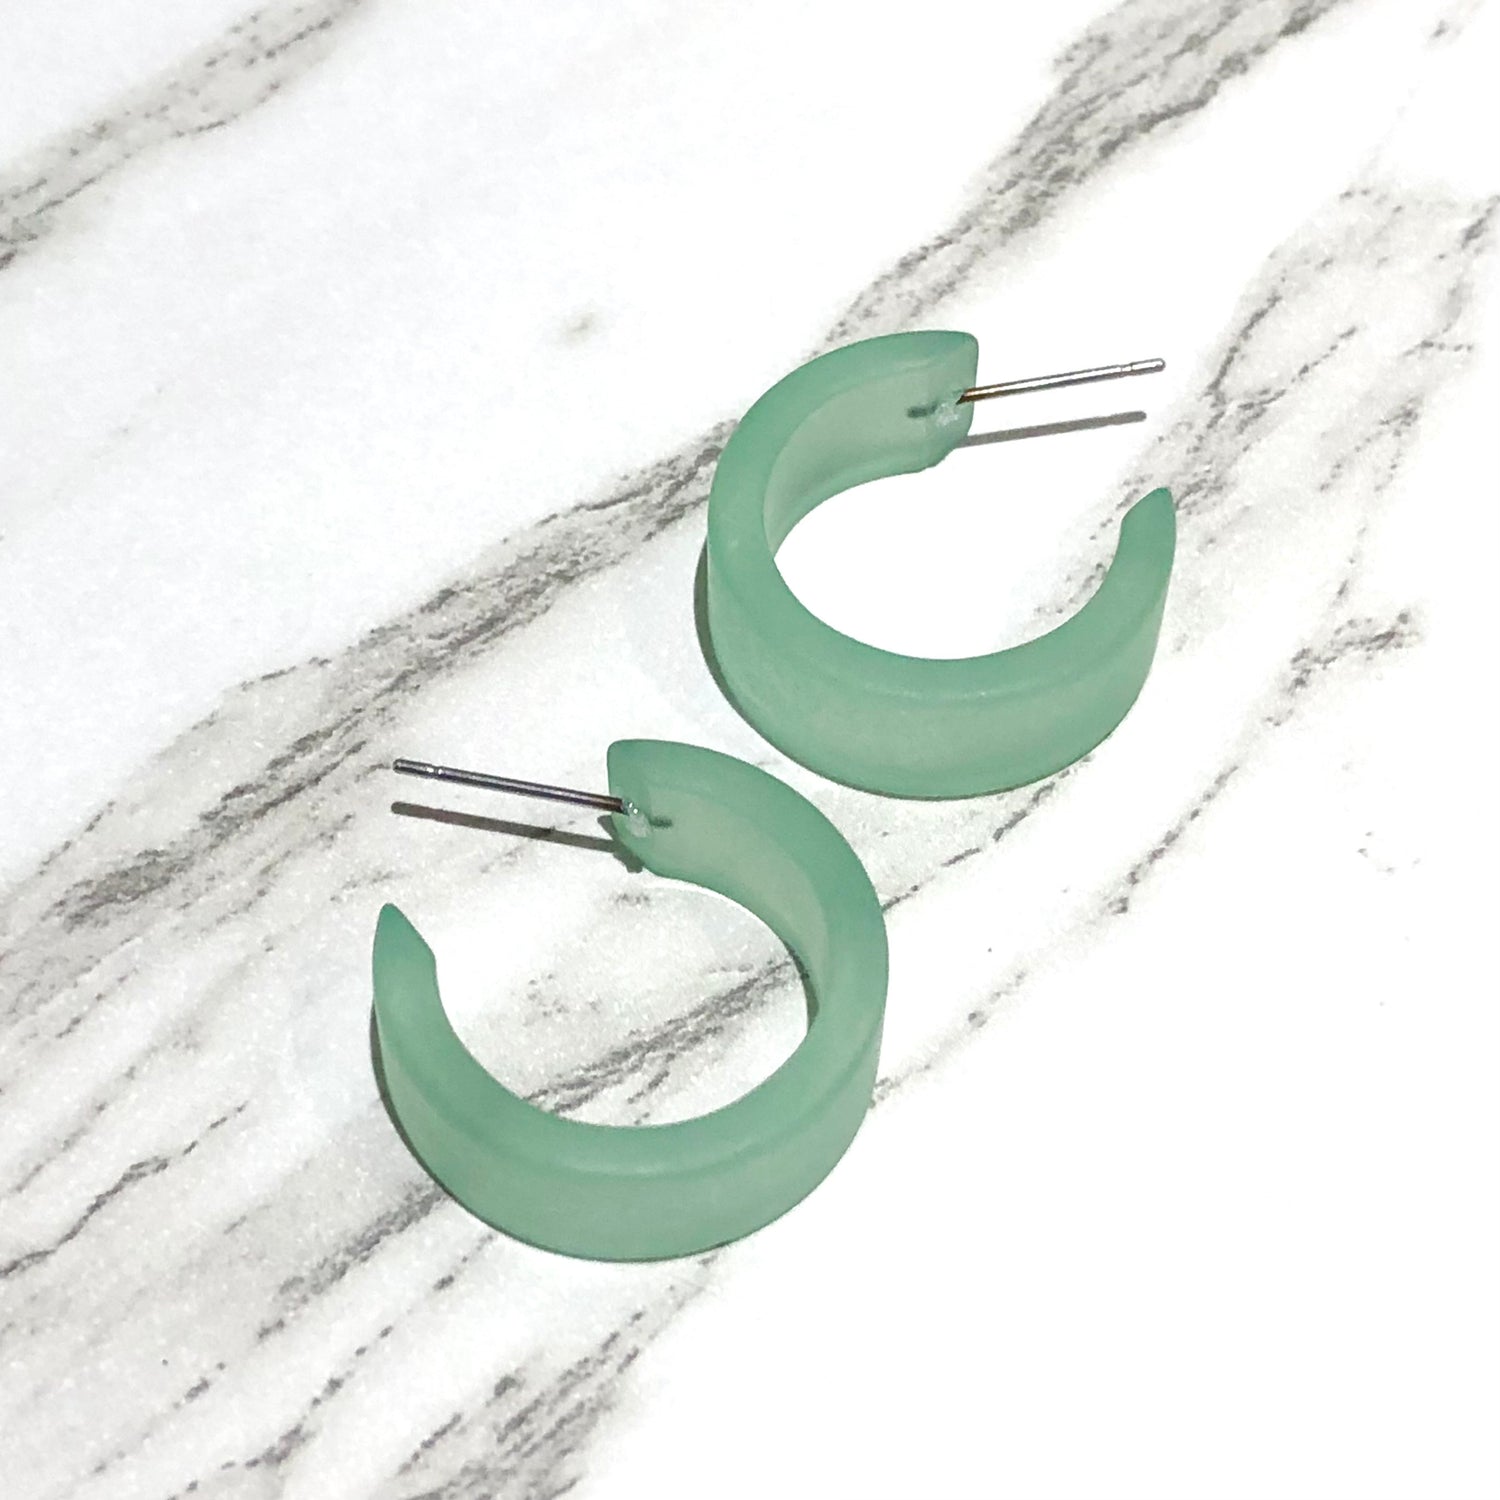 frosted green earrings